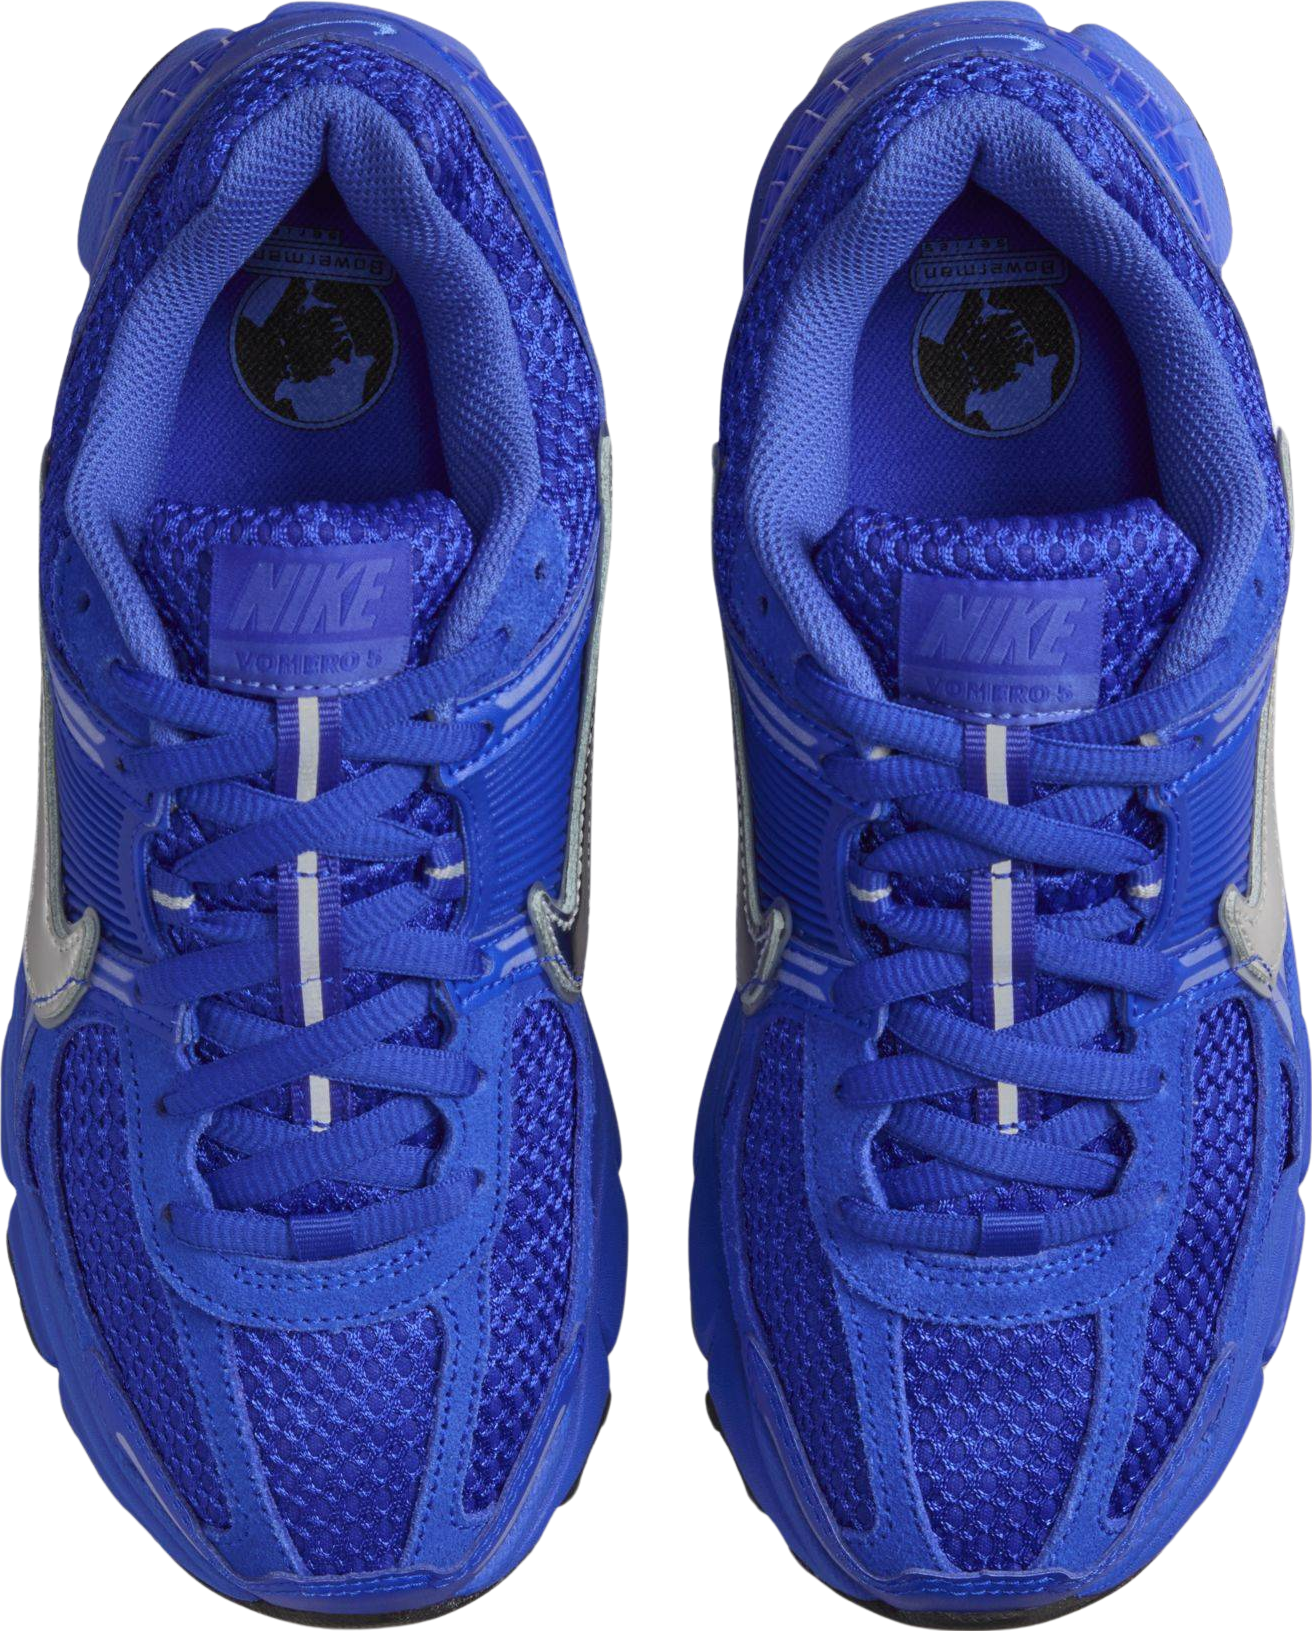 Nike Zoom Vomero 5 Race Blue (Women's)